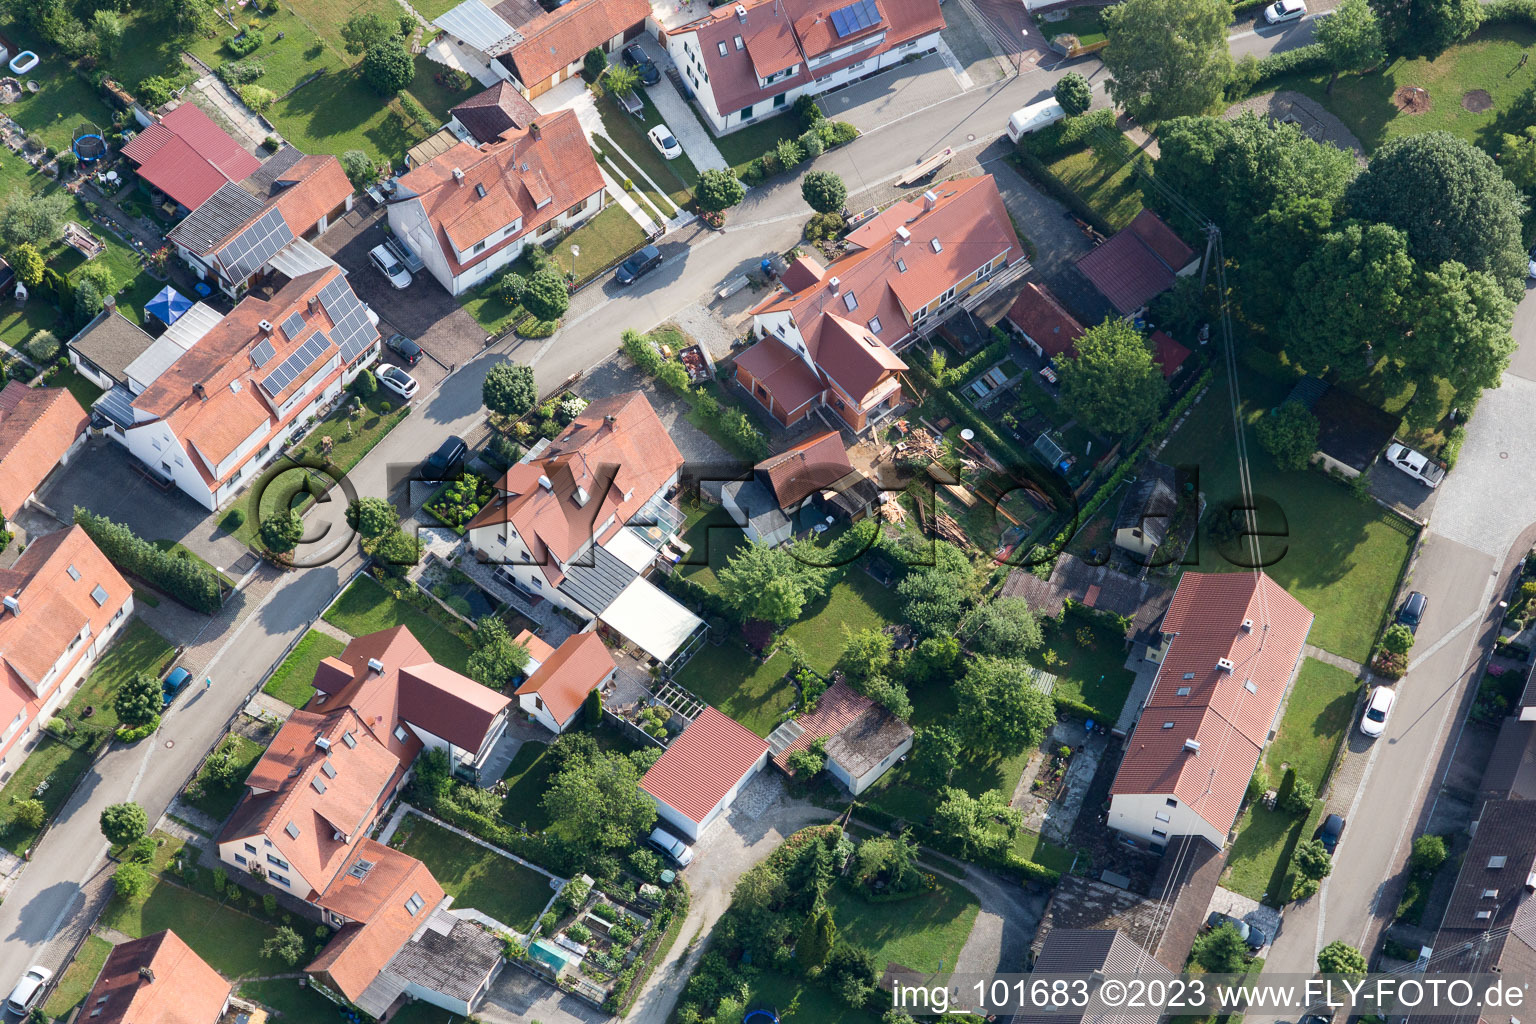 Riedlingen im Bundesland Bayern, Deutschland aus der Luft betrachtet